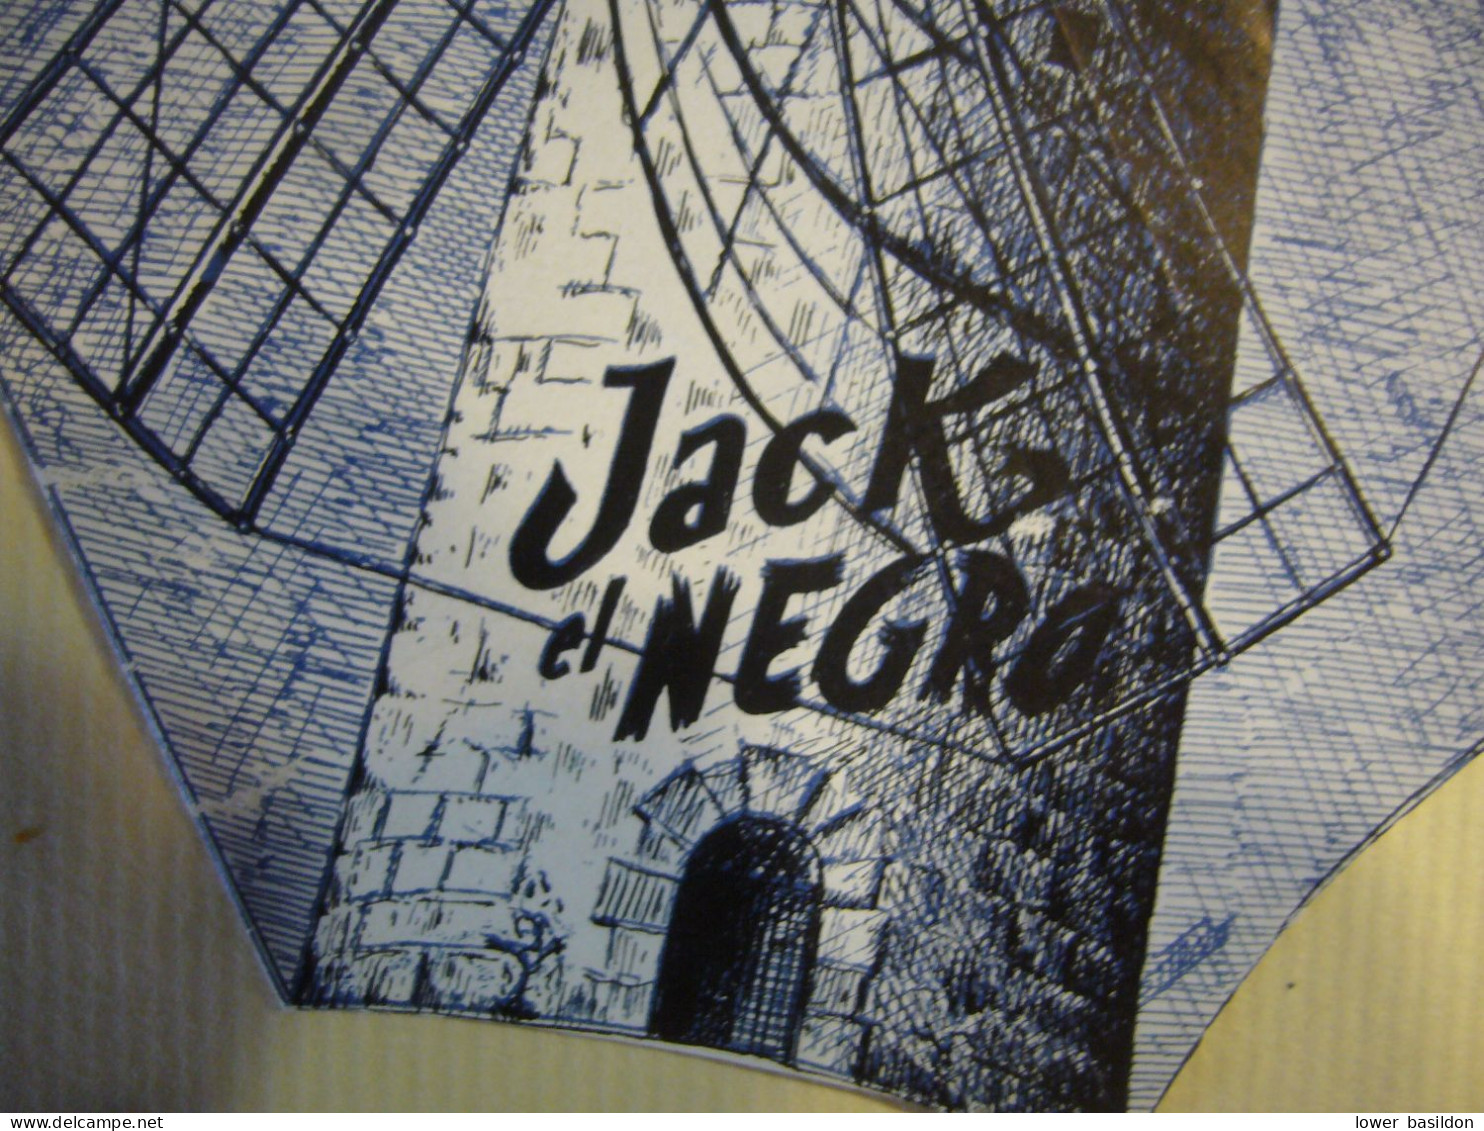 ESPAGNE     MAJORQUE    ' Jack El Negro " - Programmi